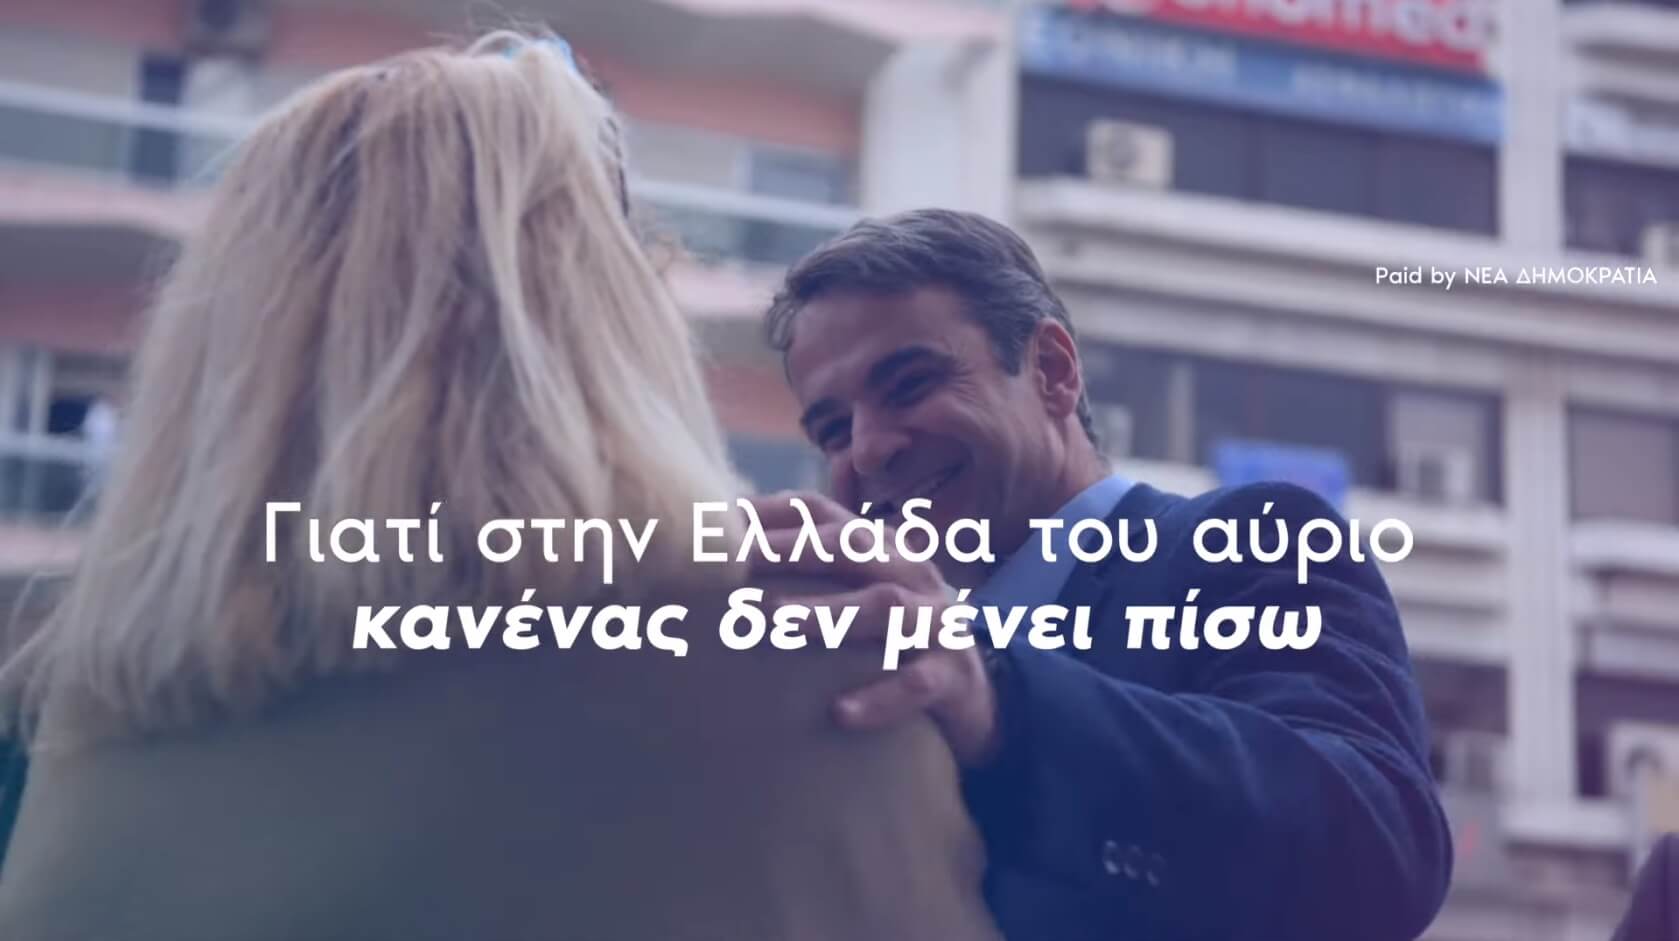 Εκλογές 2019 – ΝΔ: Στην Ελλάδα του αύριο κανείς δεν μένει πίσω [video]